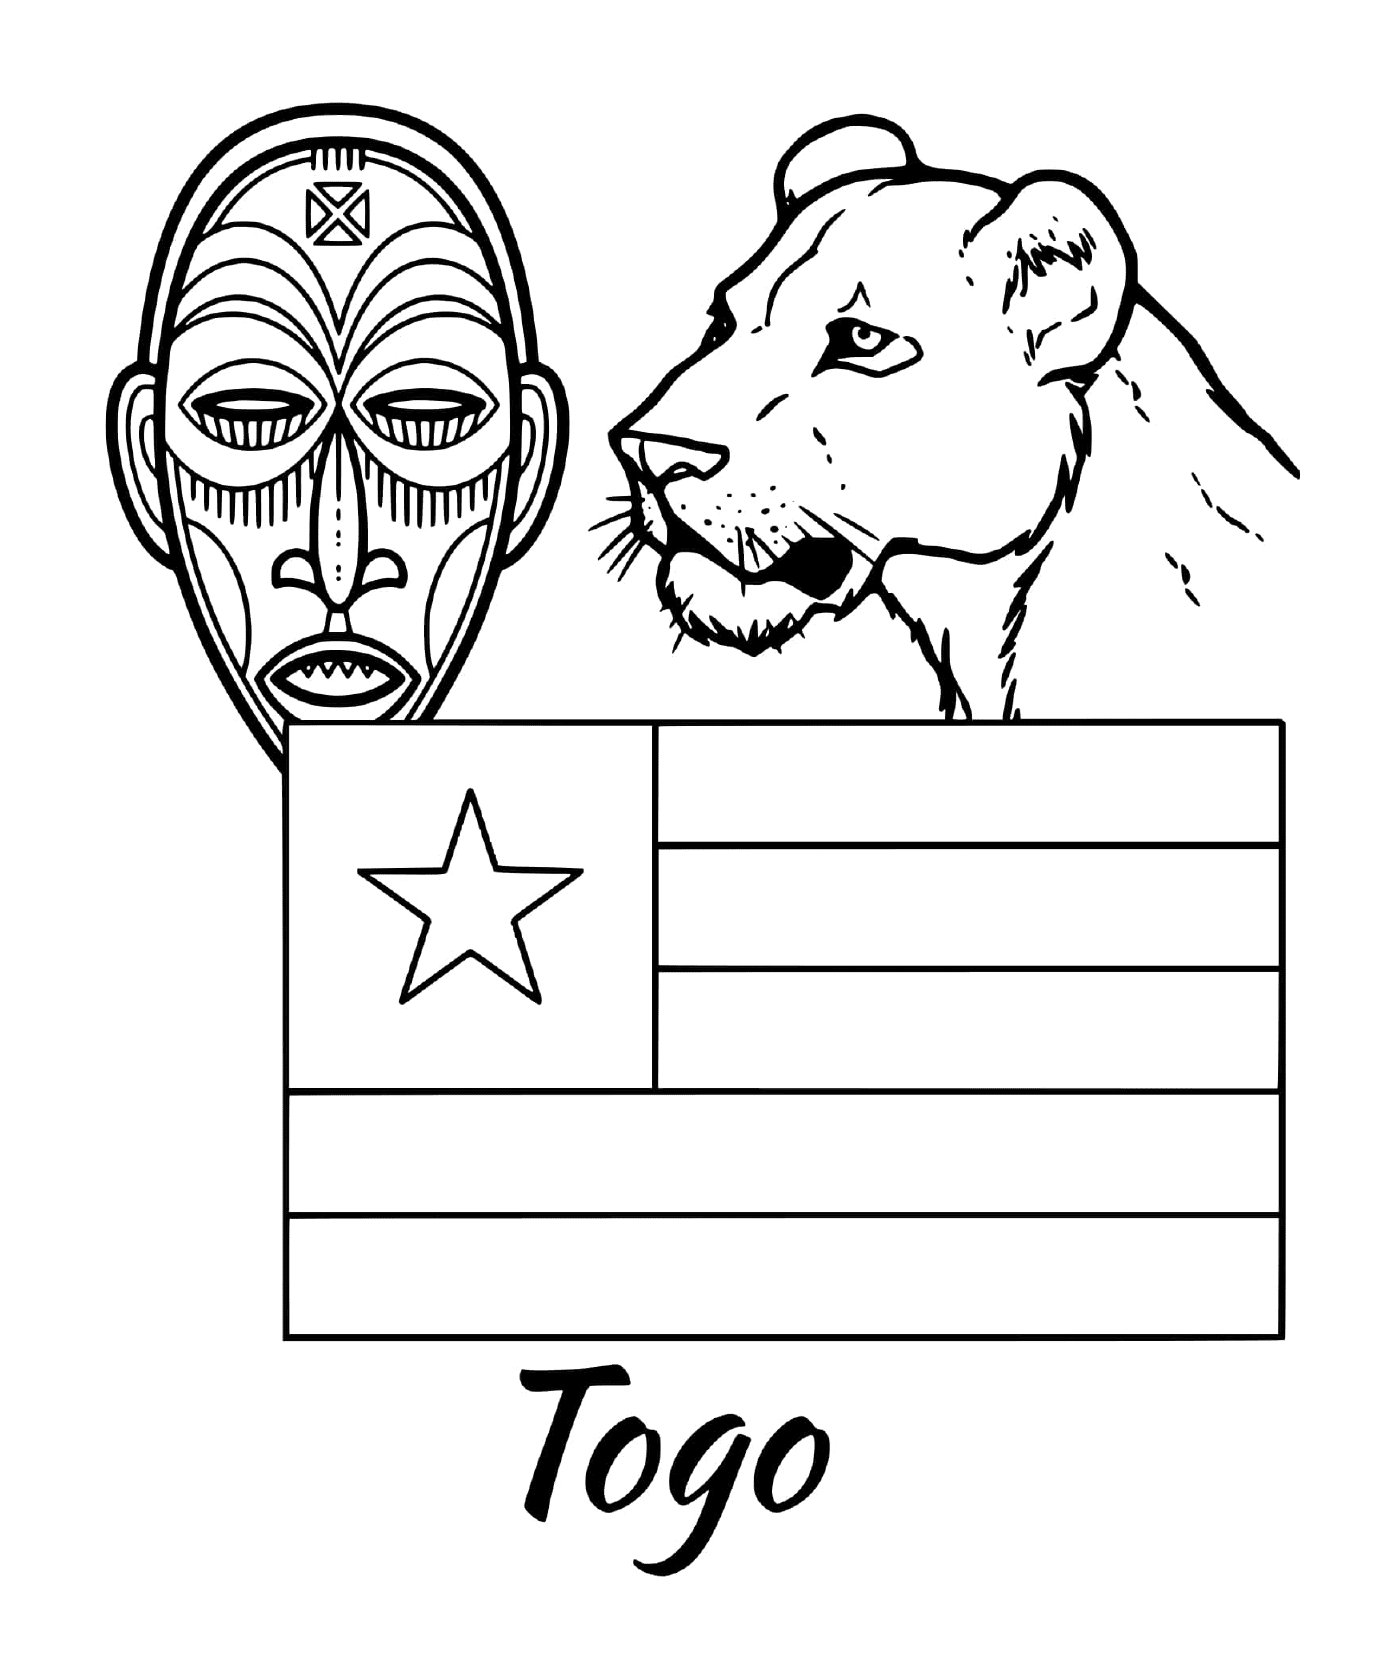  Флаг Того с помощью племенной маски 